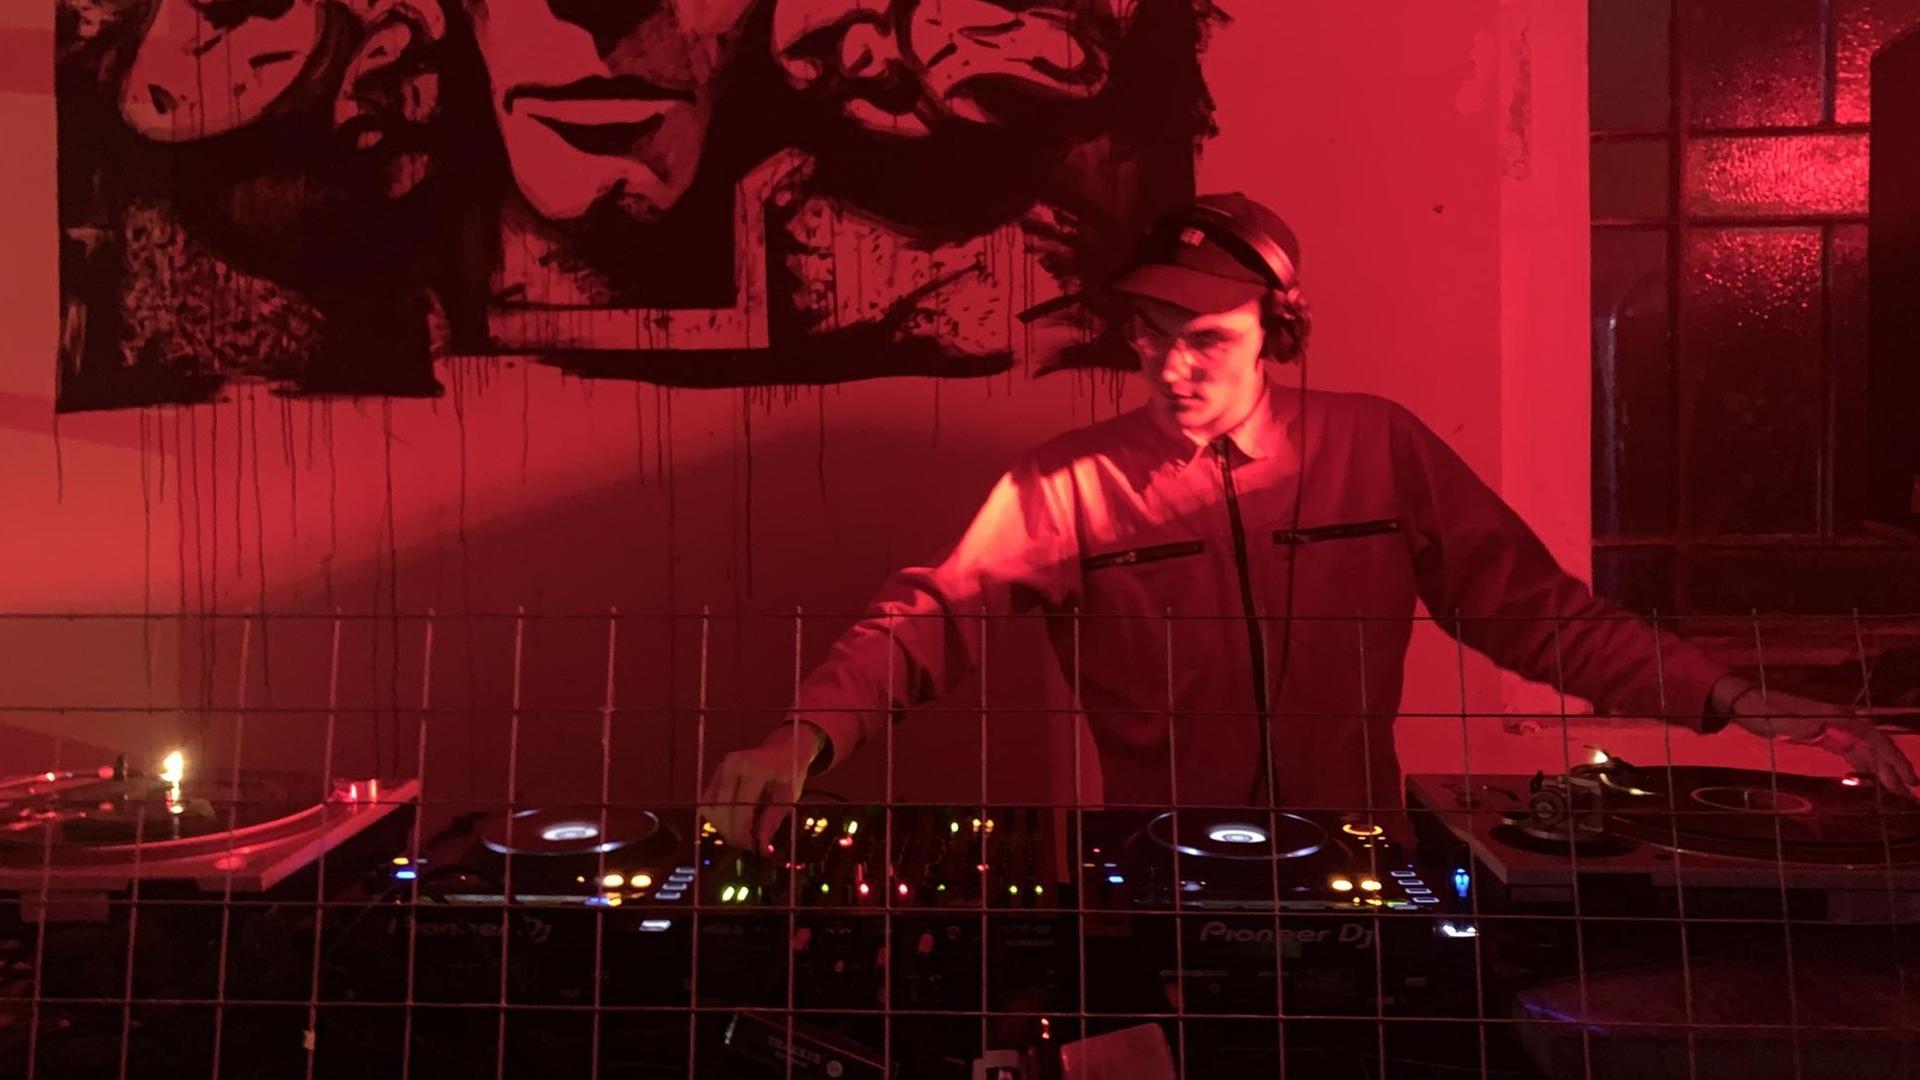 DJ Jakob Mandler im Technoclub in Mailand. Die Szene ist in rotes Licht getaucht.